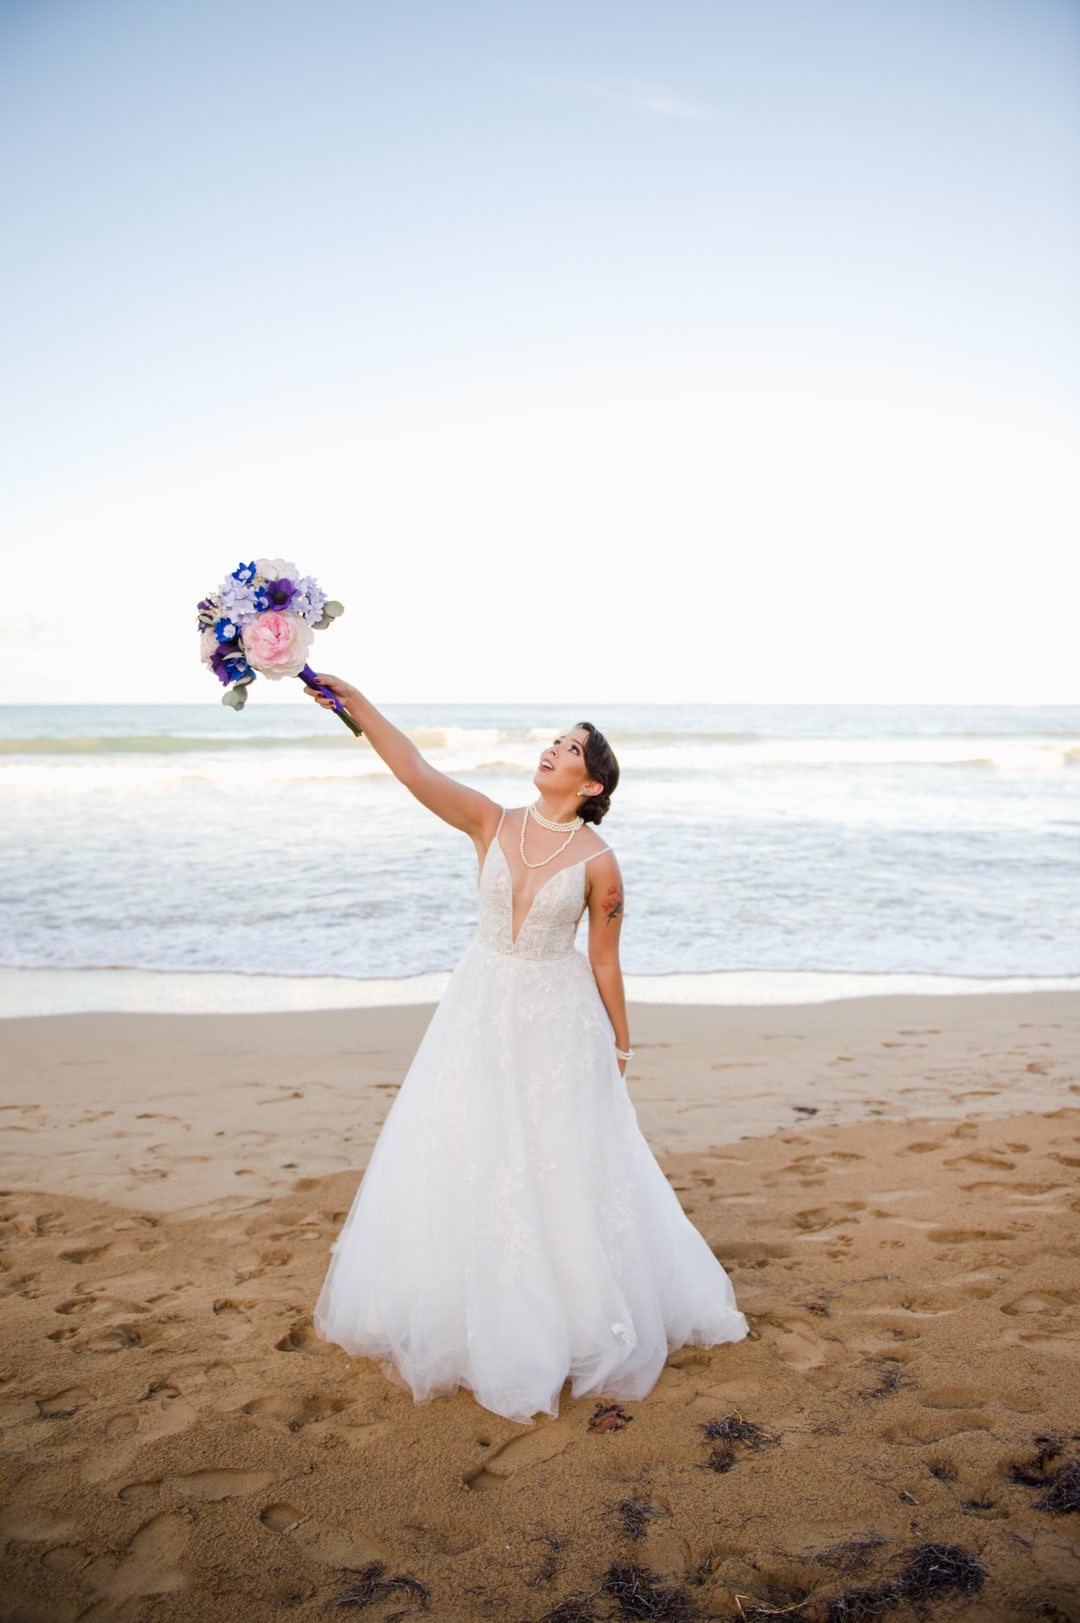 fotos de boda en playa las picuas puerto rico